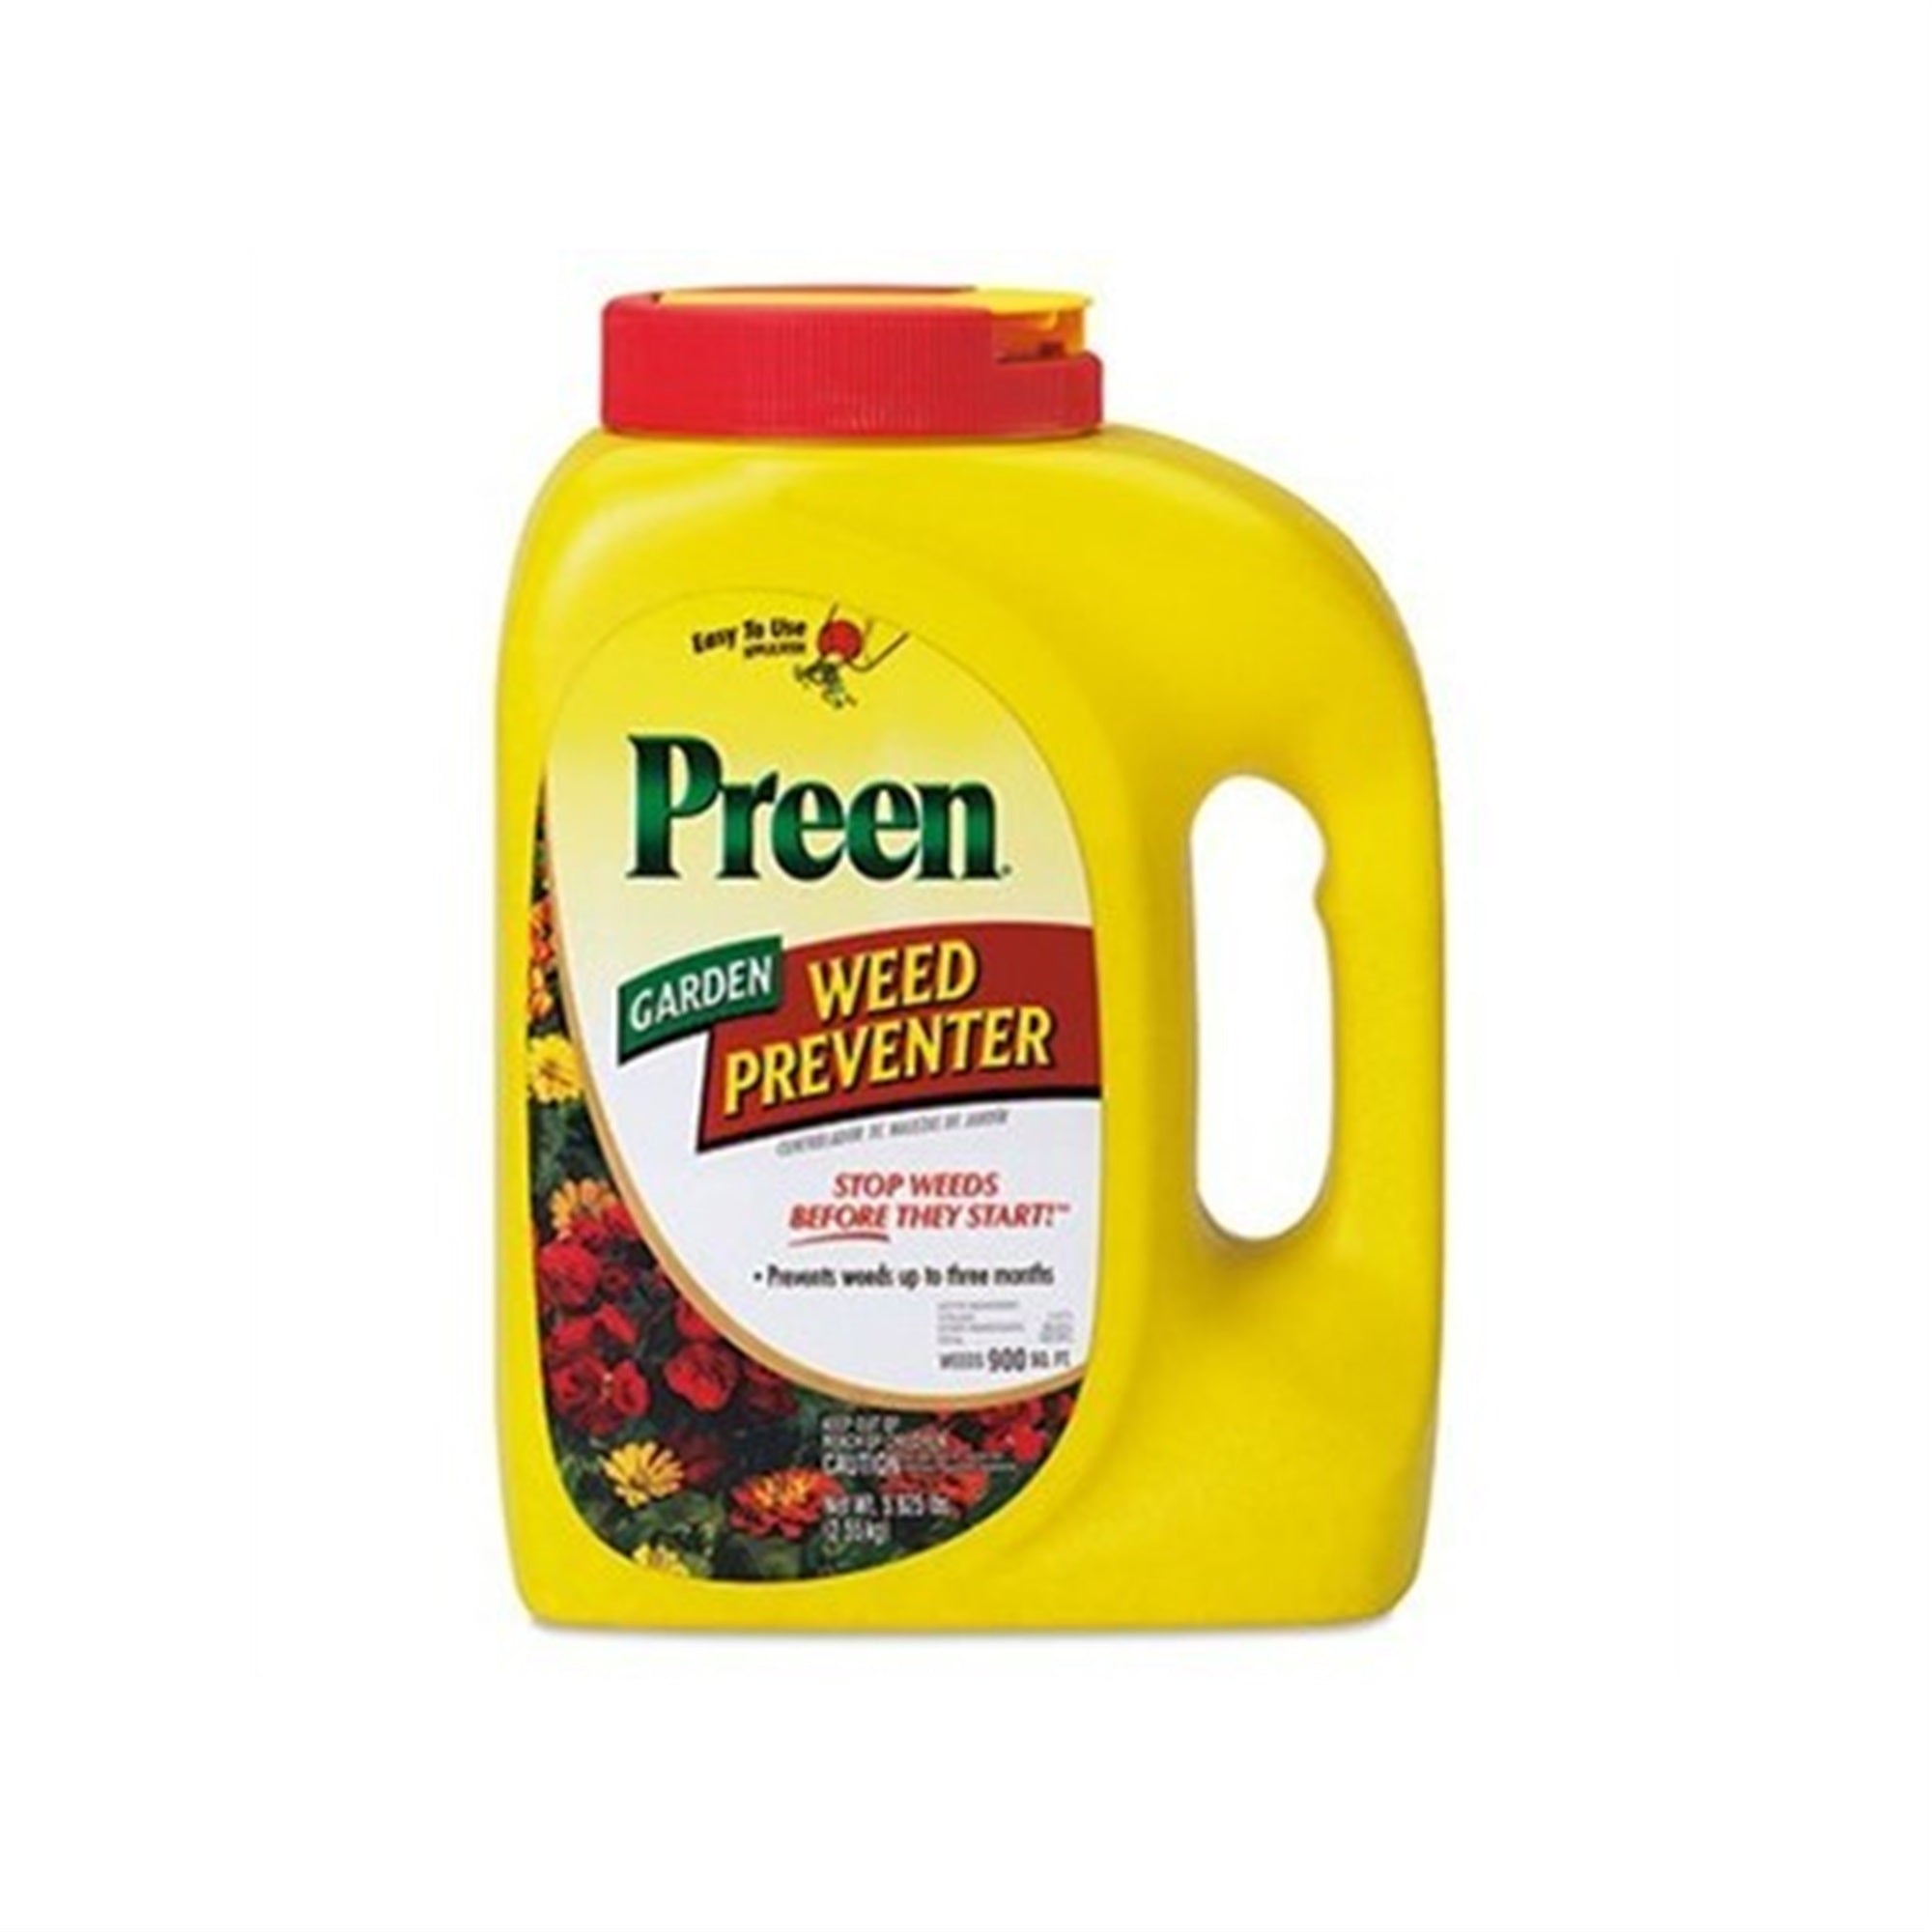 Preen Garden Weed Preventer, 5.625 Lb